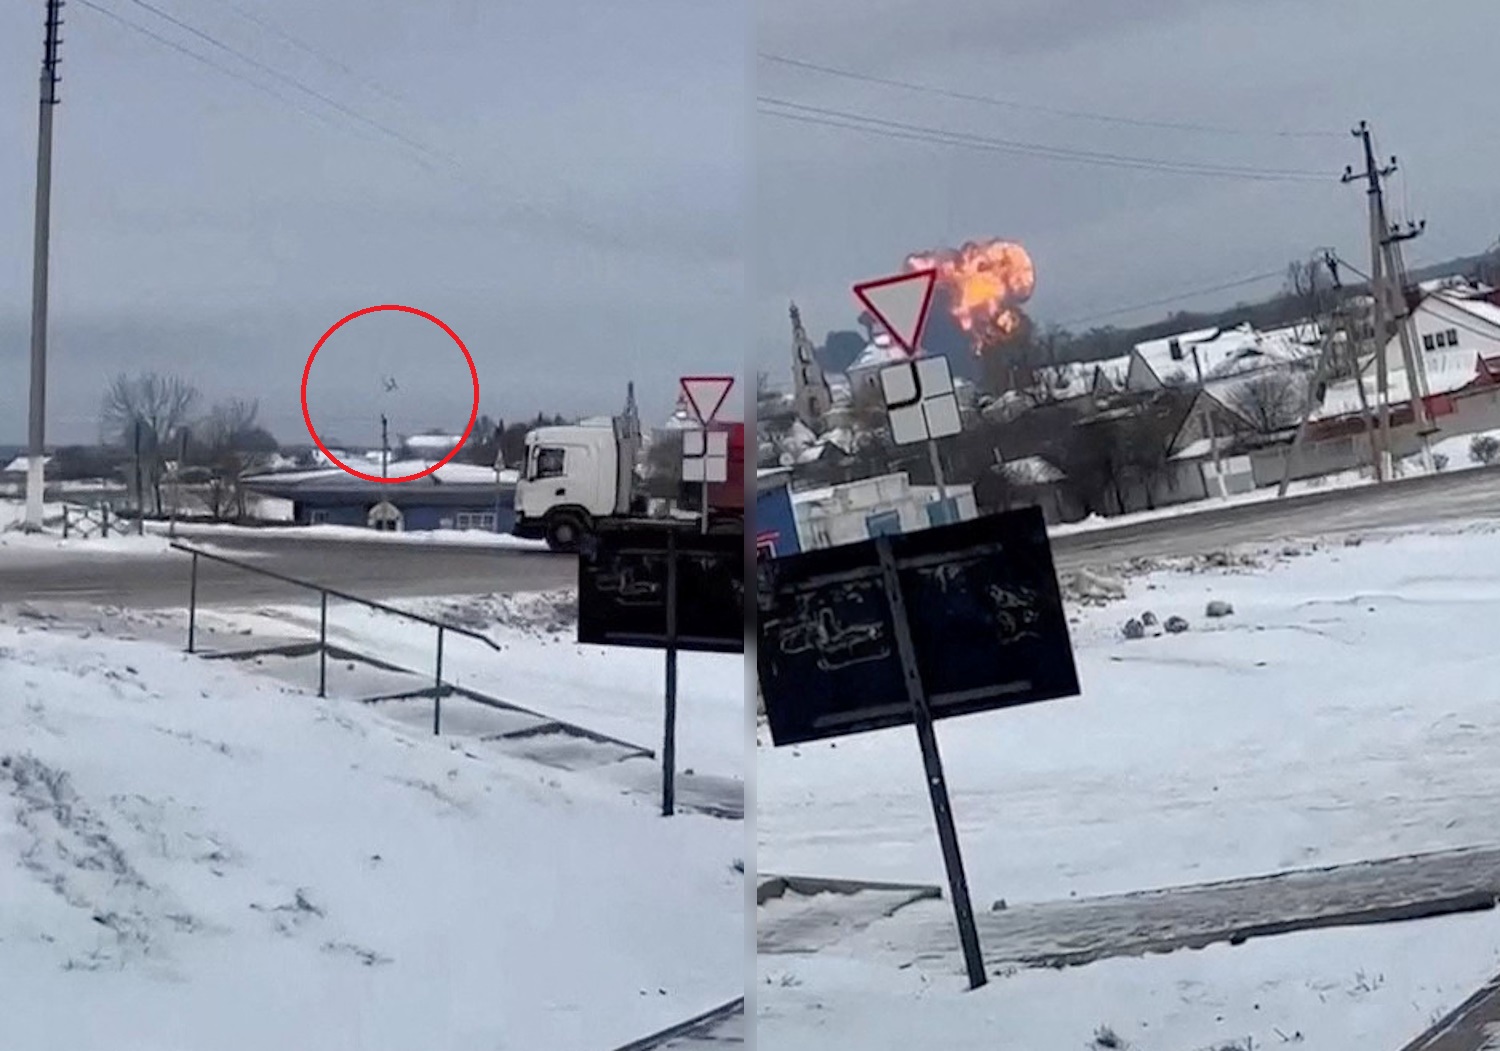 Ρωσία: Νεκροί όλοι οι επιβαίνοντες του μεταγωγικού αεροσκάφους που συνετρίβη στο Μπέλγκοροντ